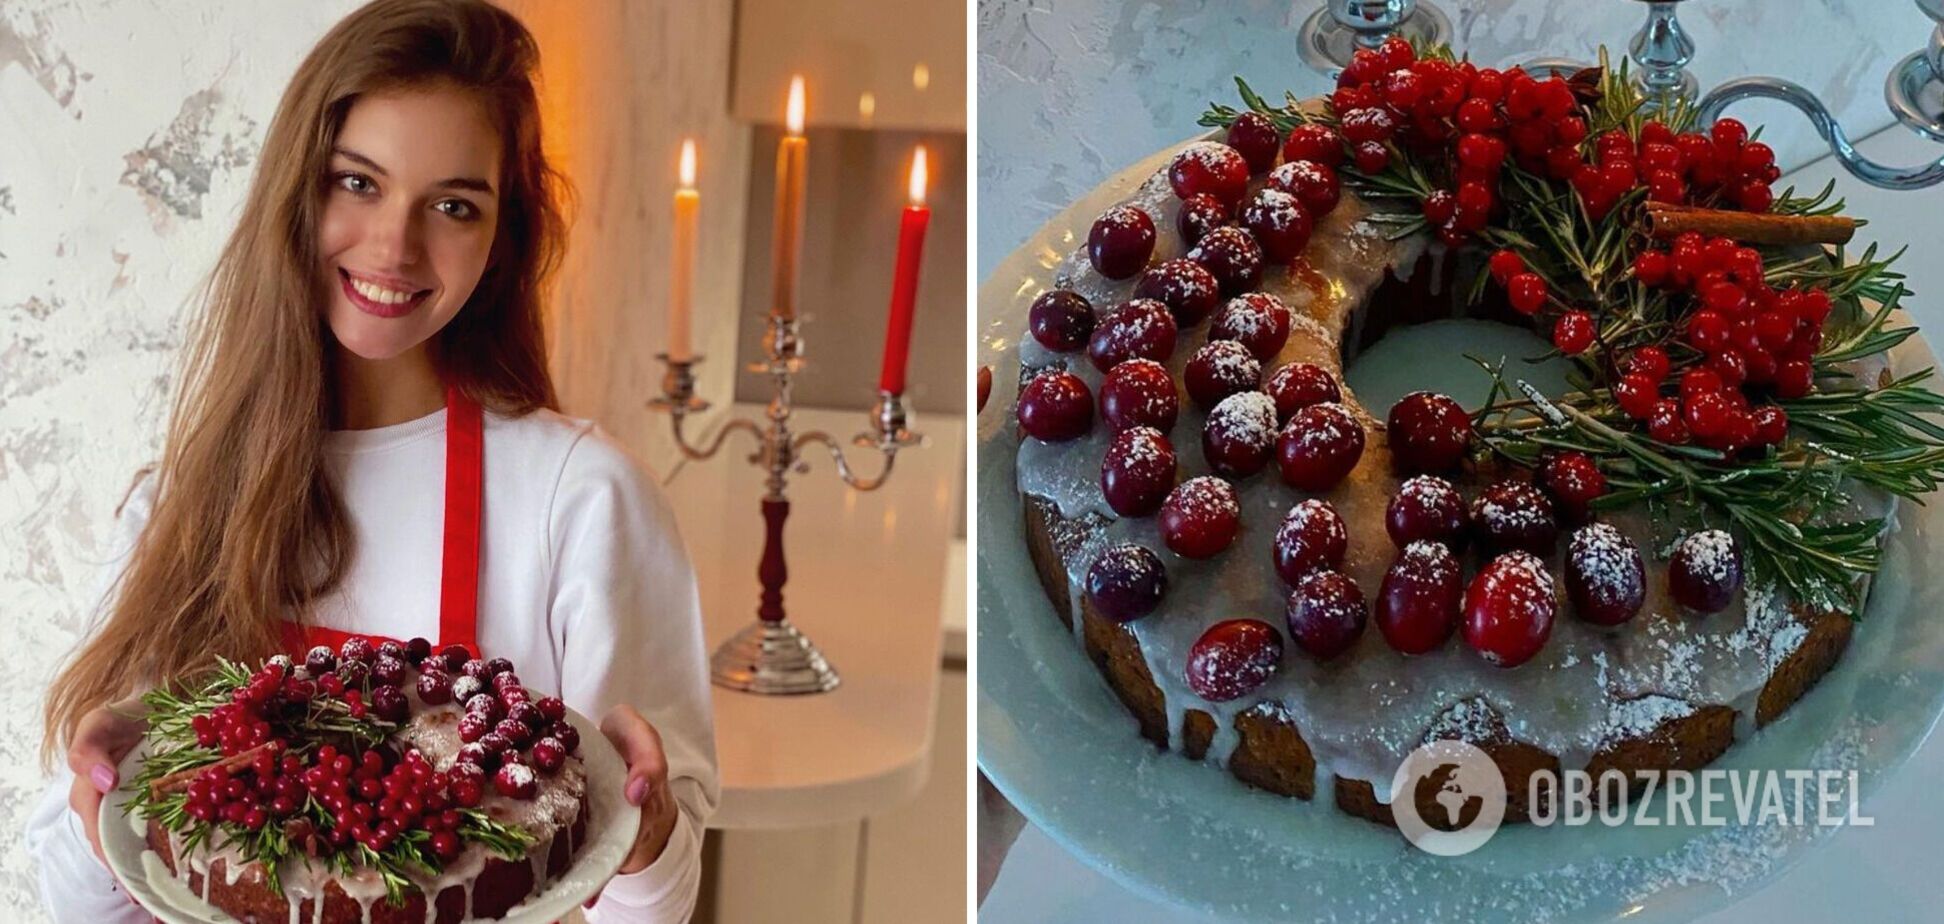 Олександра Кучеренка поділилася рецептом різдвяного пирога